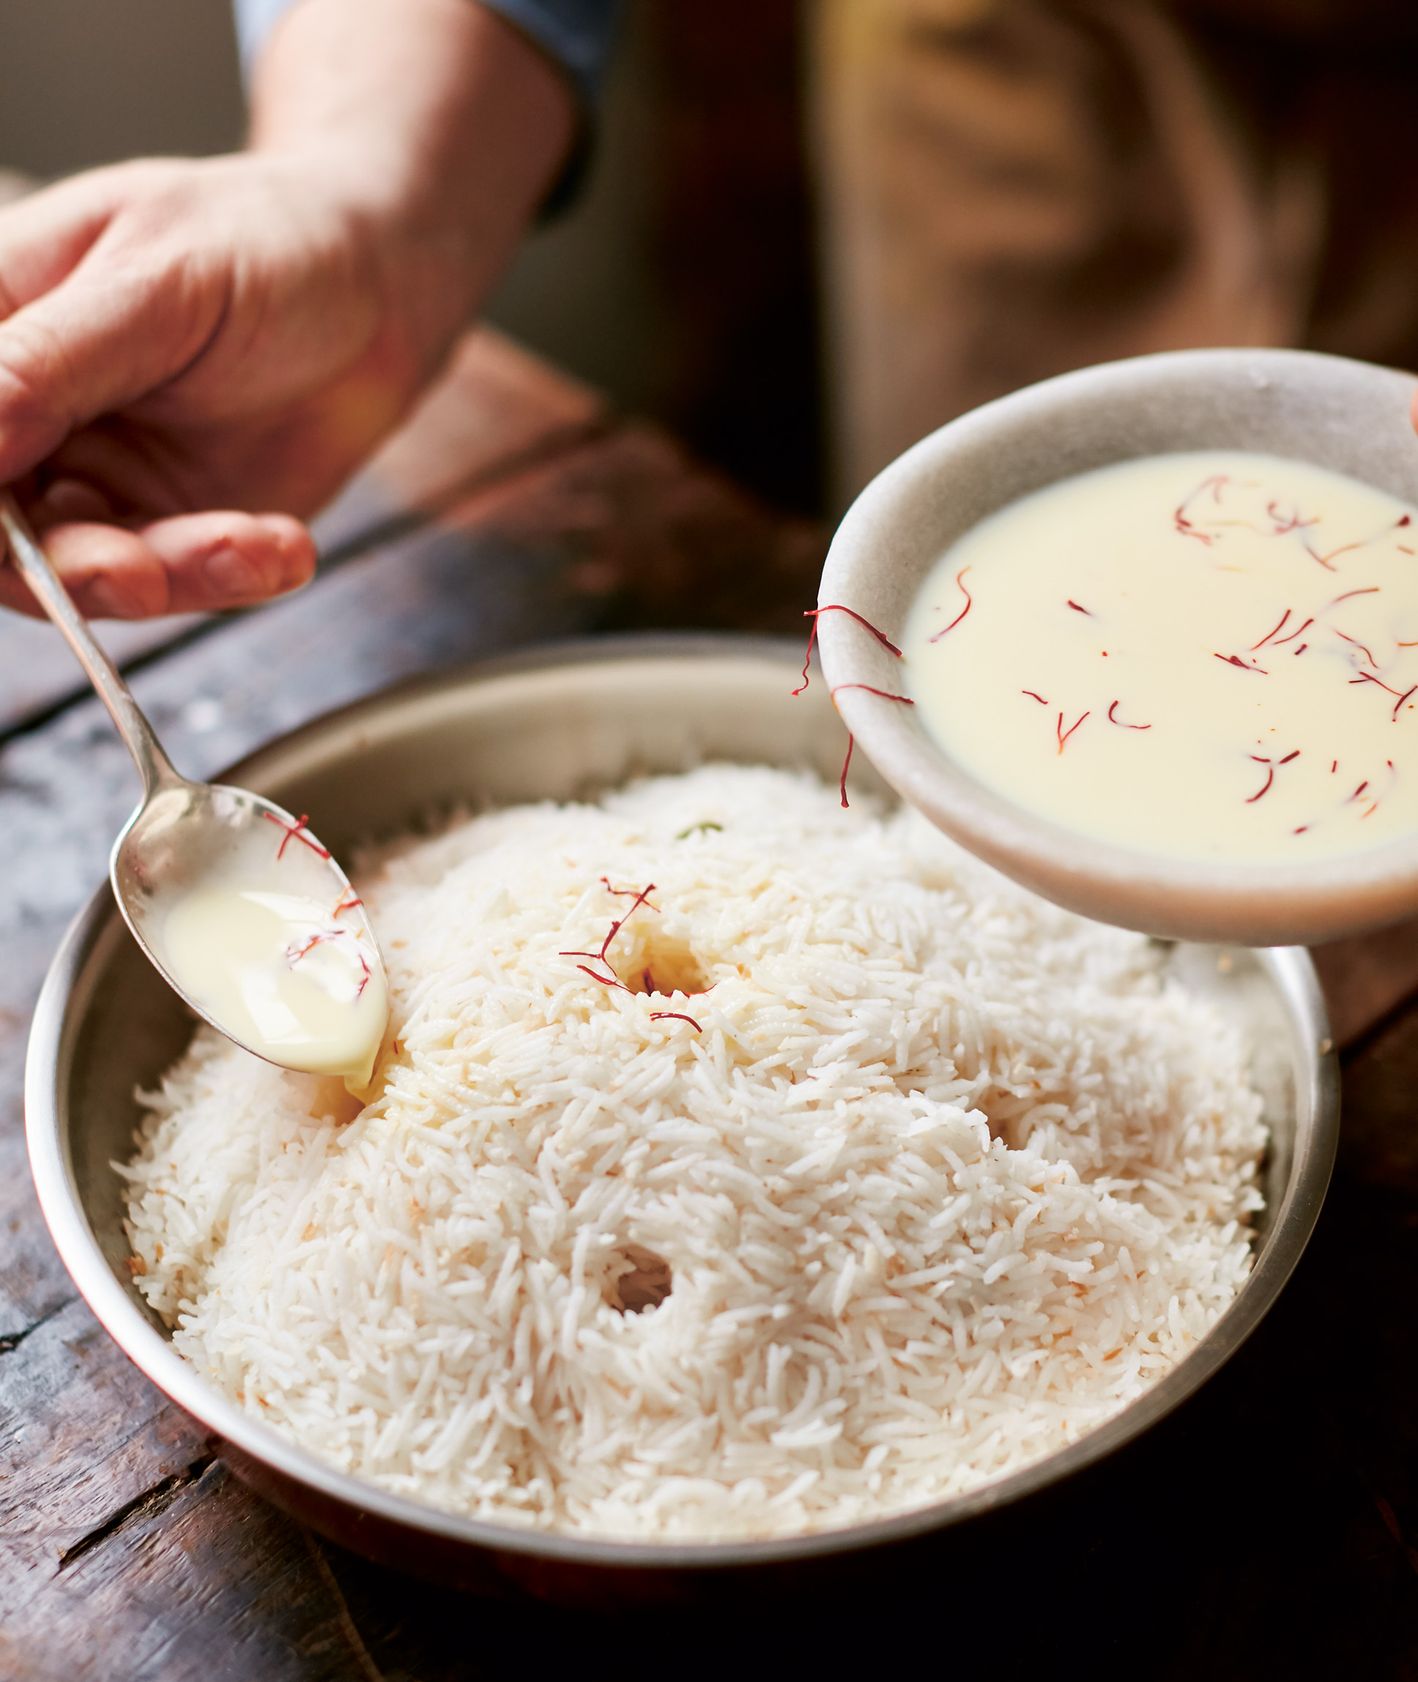 Zdjęcie kokosowego ryżu z książki Jamiego Olivera "Razem" / fot. David Loftus